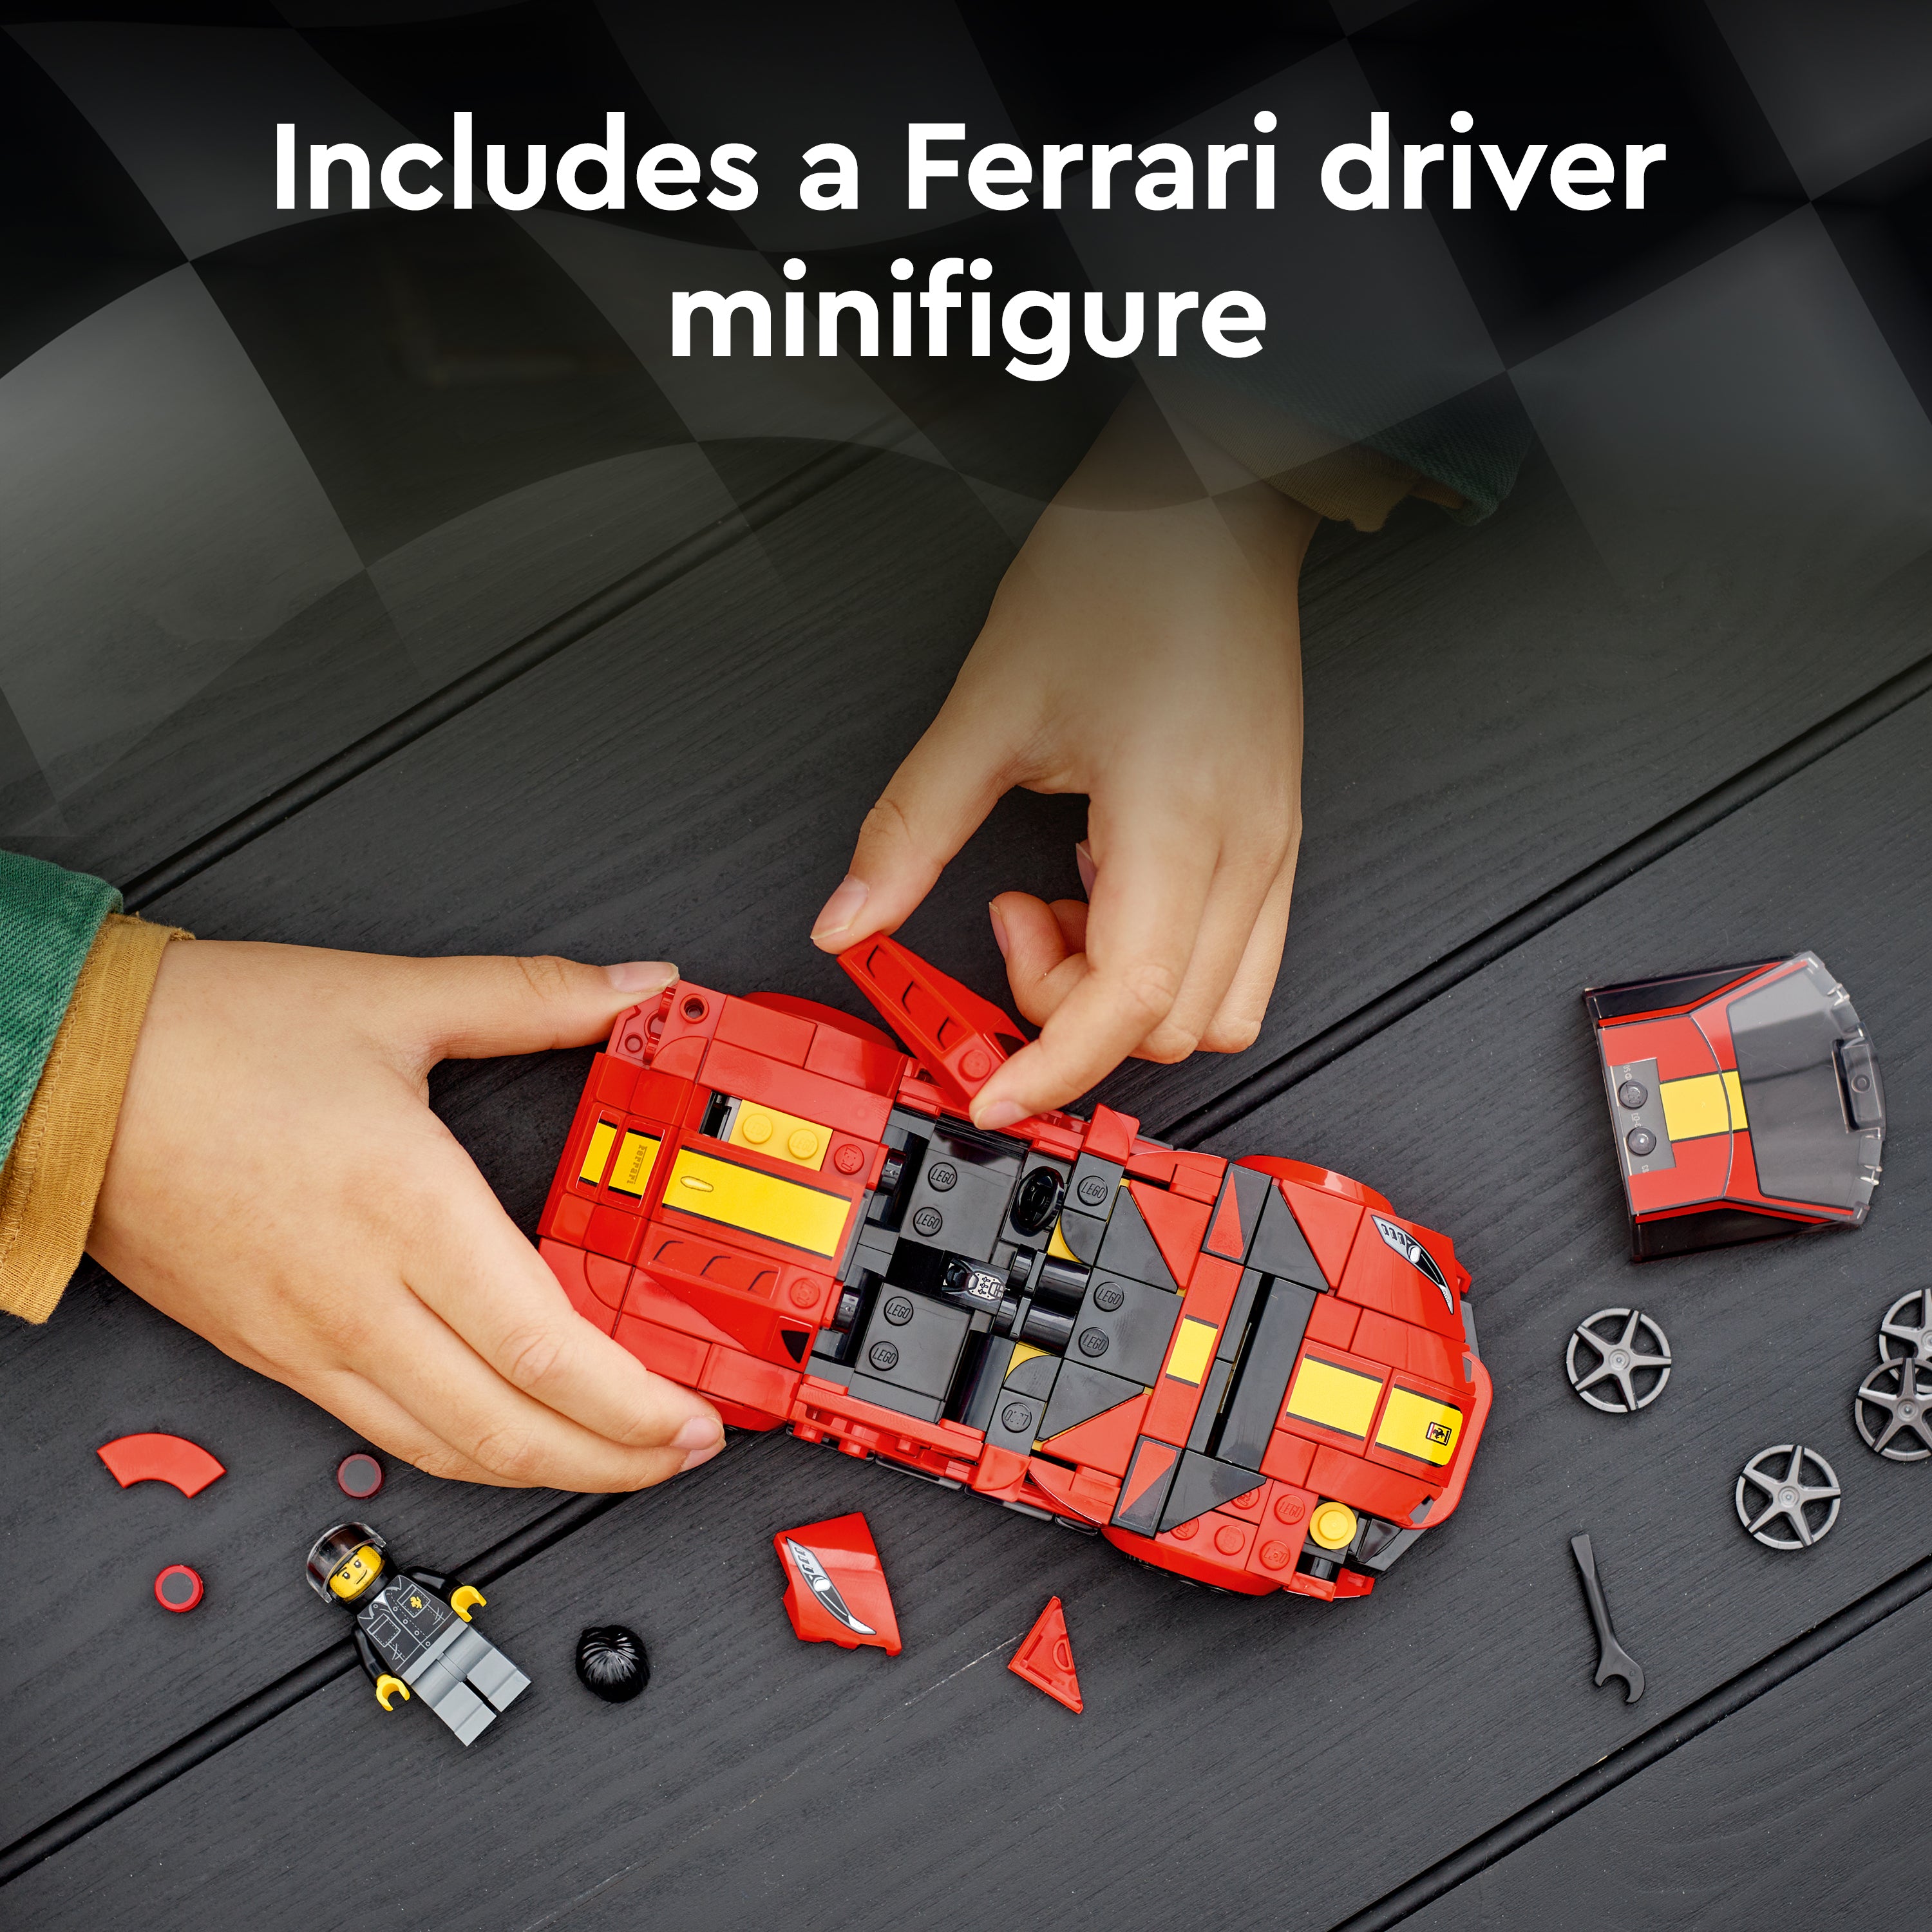 Lego 76914 Ferrari 812 Competizione